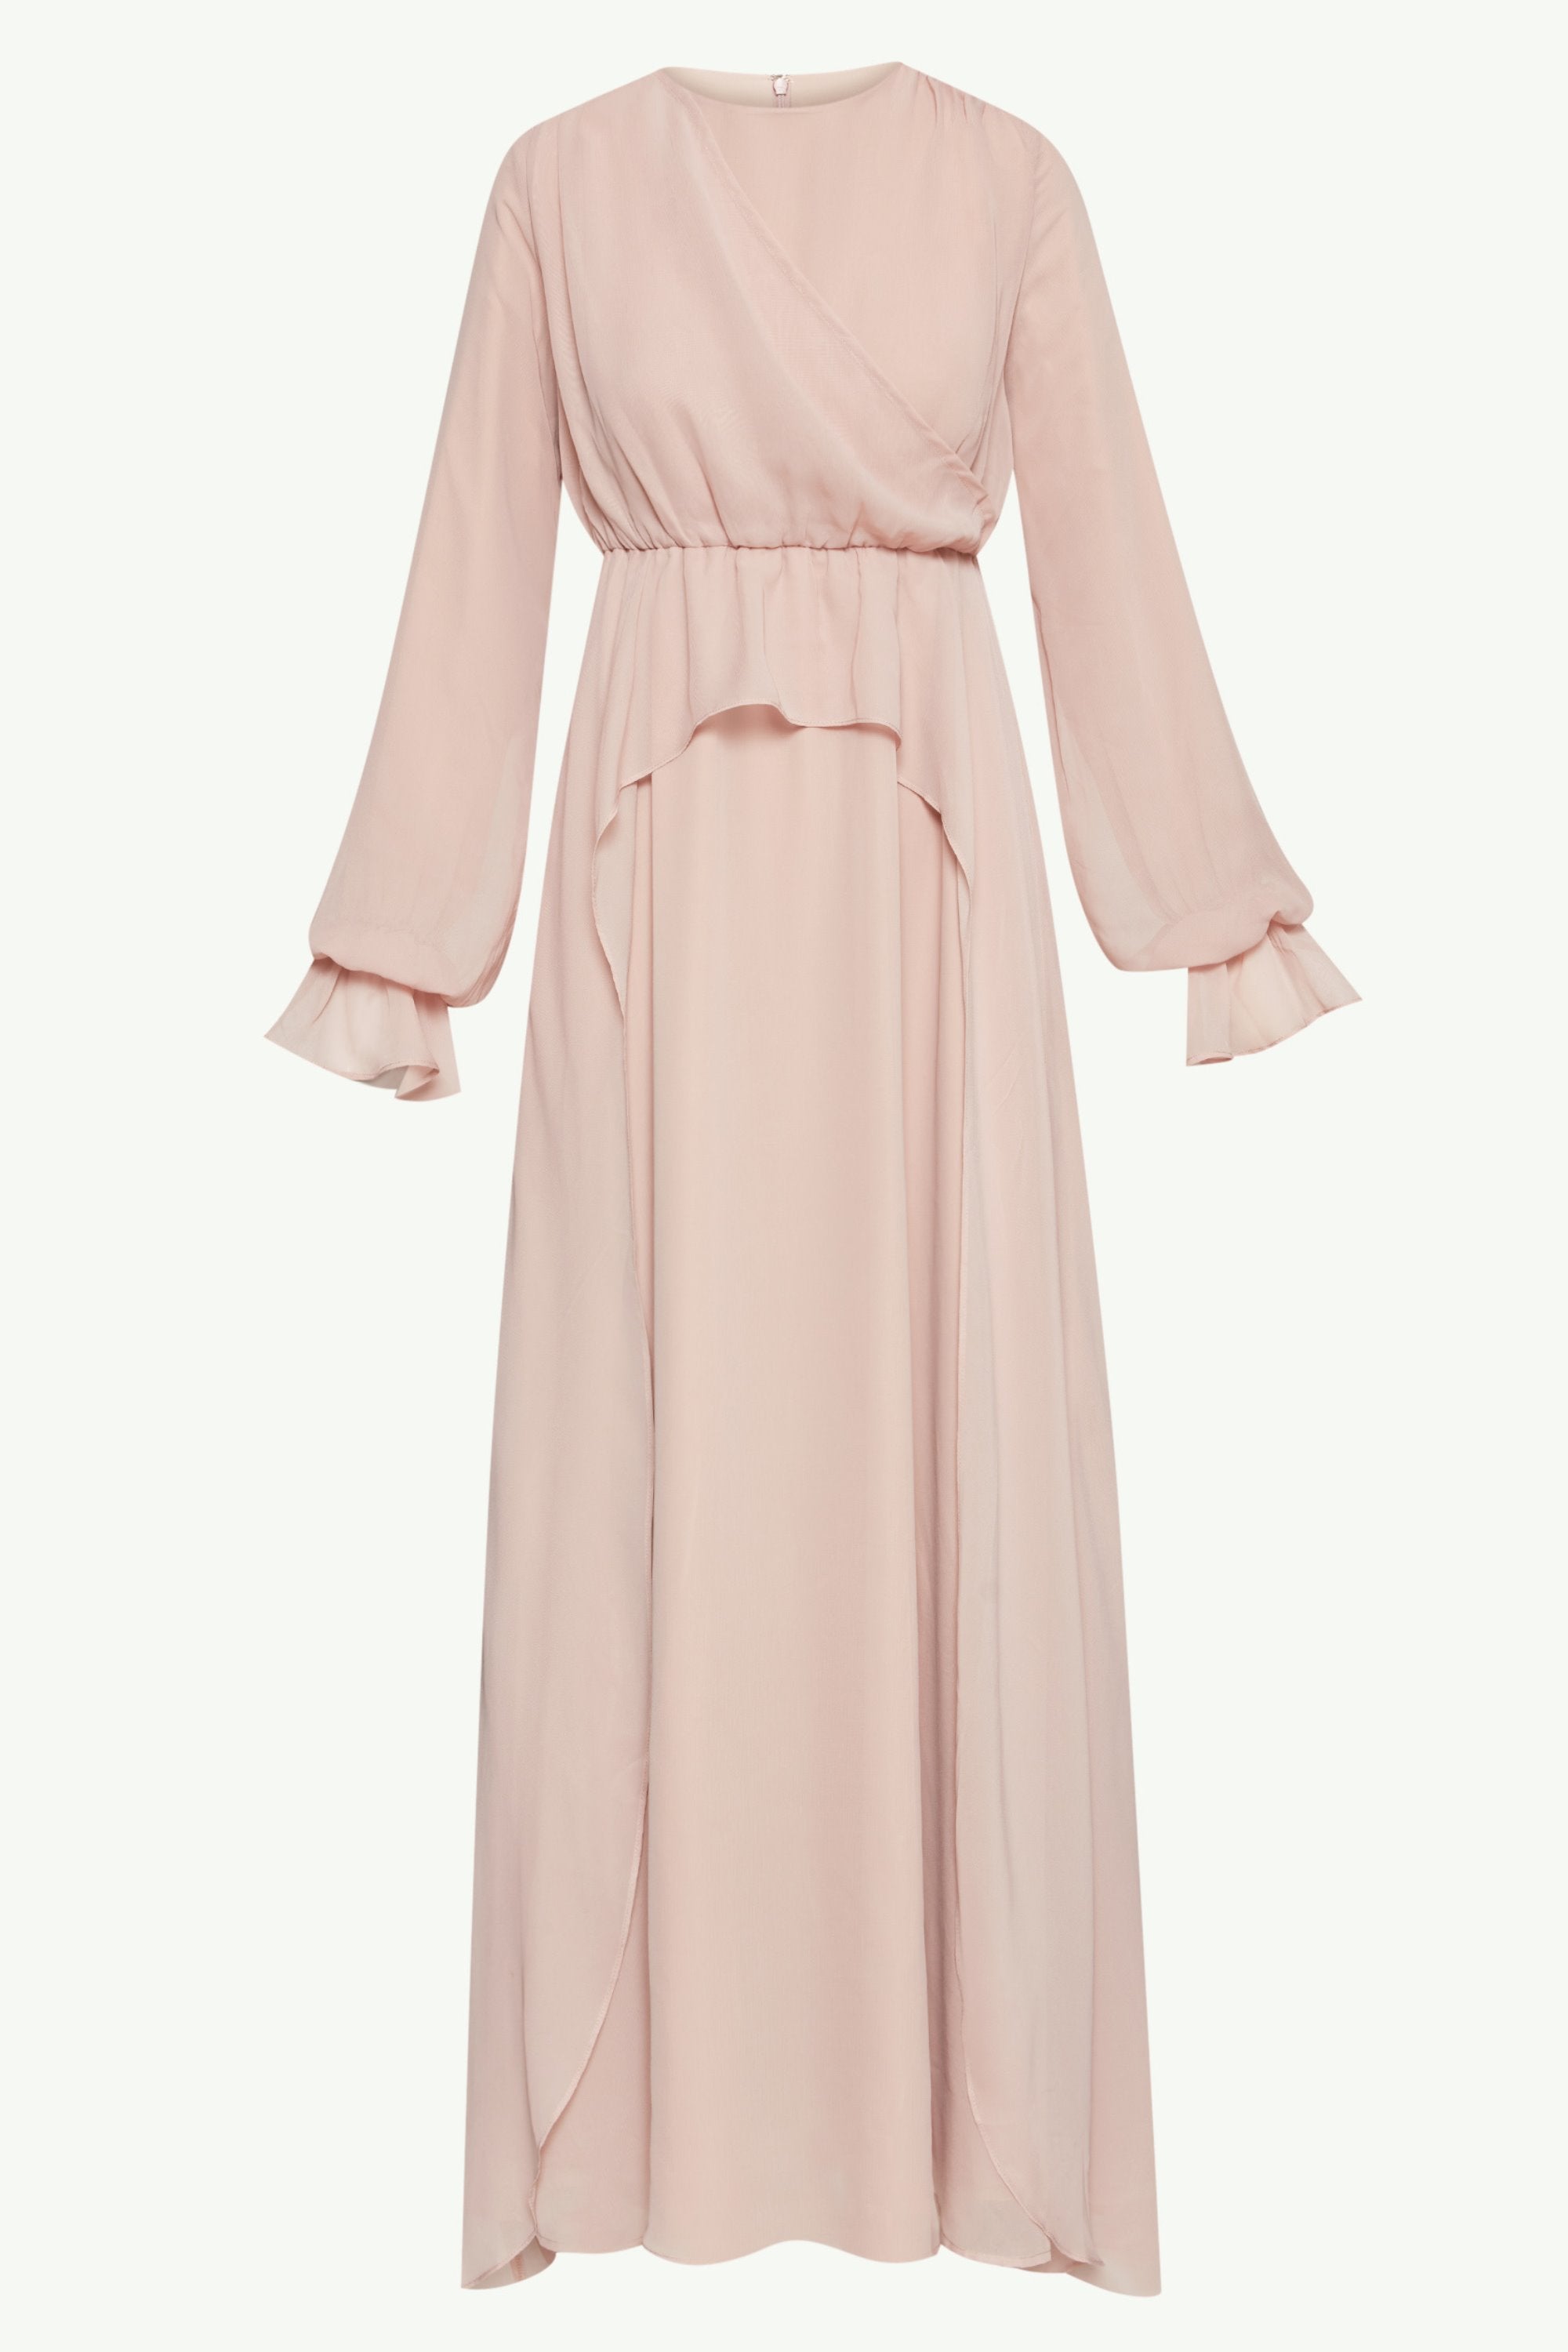 Aara Chiffon Maxi Dress - Jasmine Pink Clothing epschoolboard 